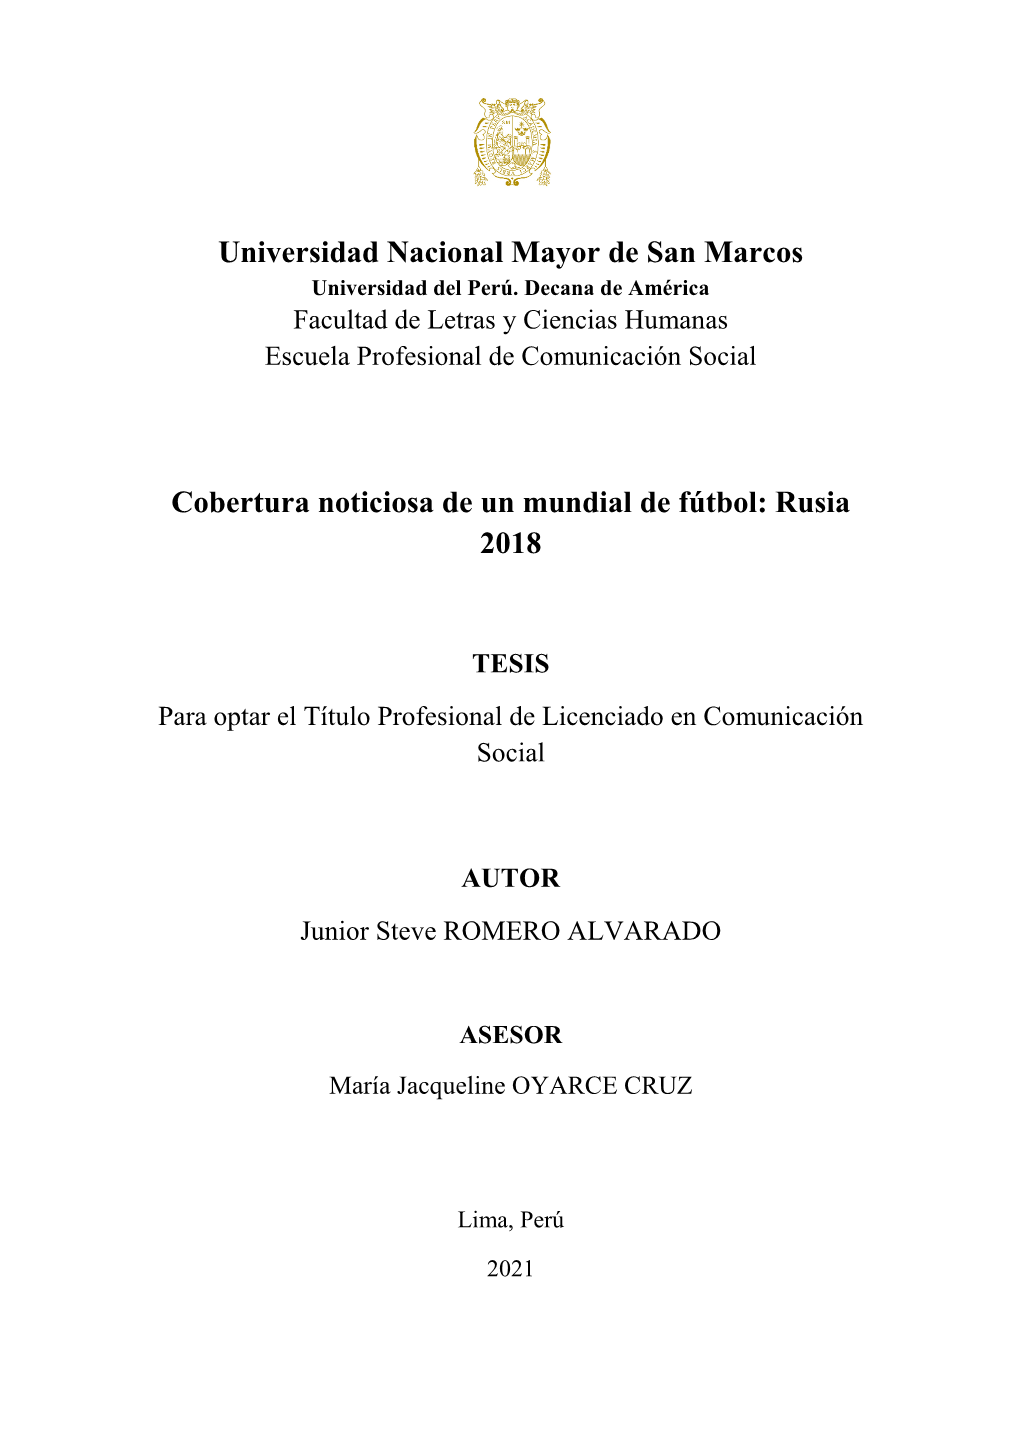 Universidad Nacional Mayor De San Marcos Cobertura Noticiosa De Un Mundial De Fútbol